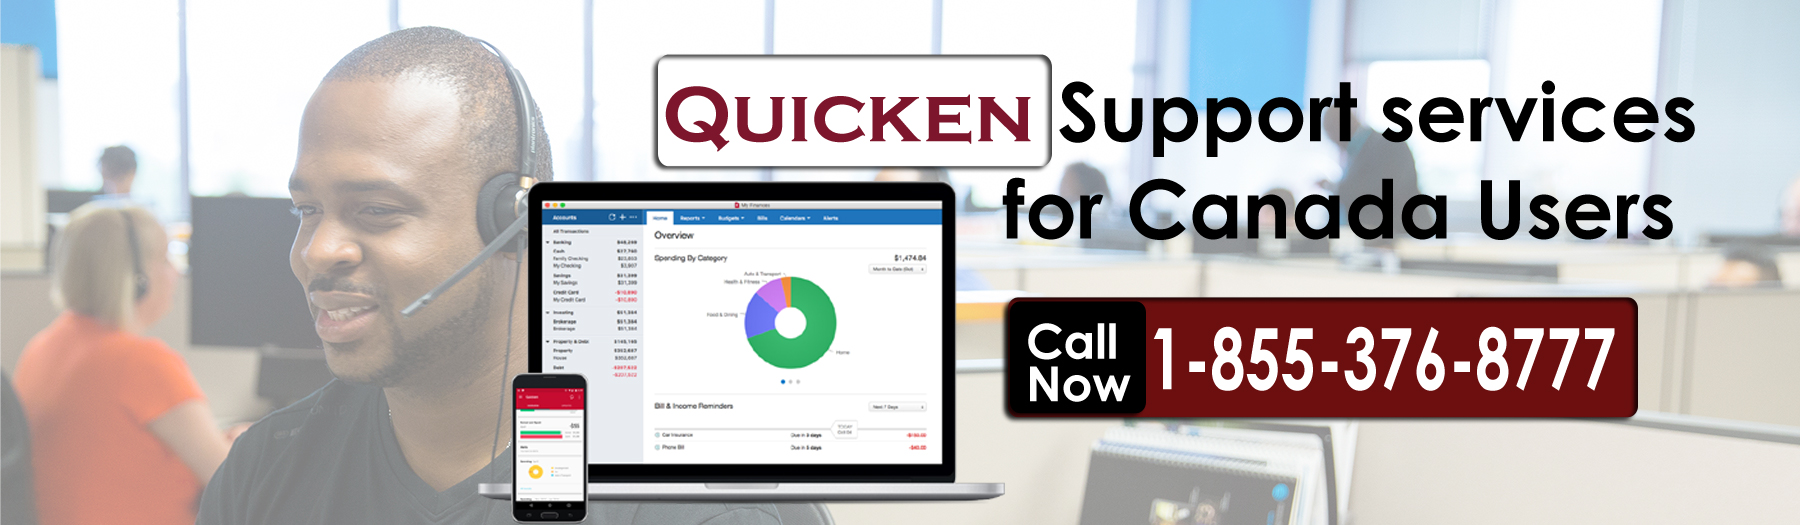 quicken online banking support